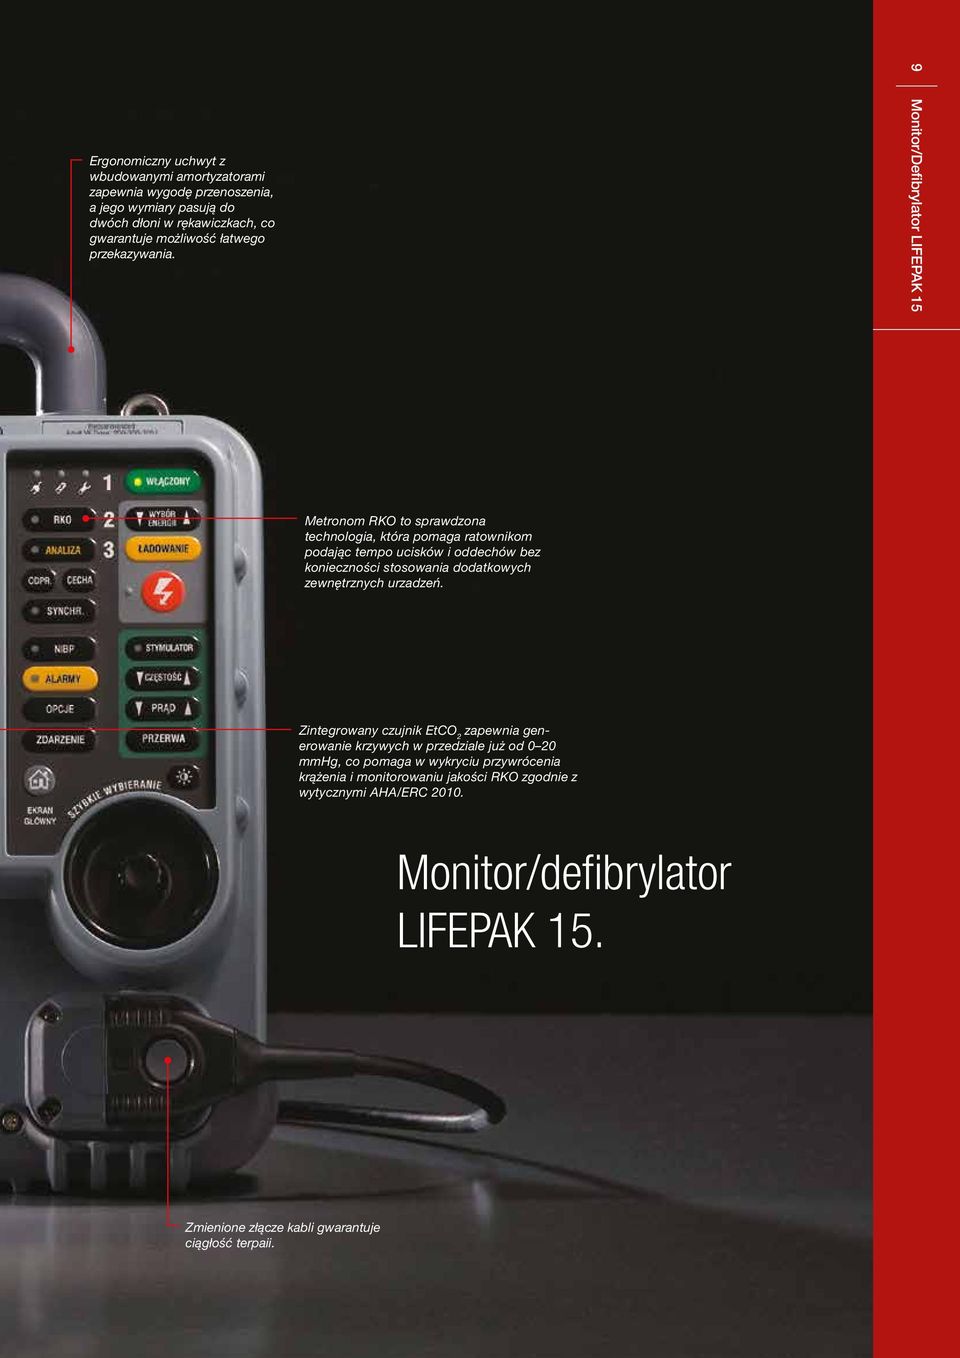 9 Monitor/Defibrylator LIFEPAK 15 Metronom RKO to sprawdzona technologia, która pomaga ratownikom podając tempo ucisków i oddechów bez konieczności stosowania